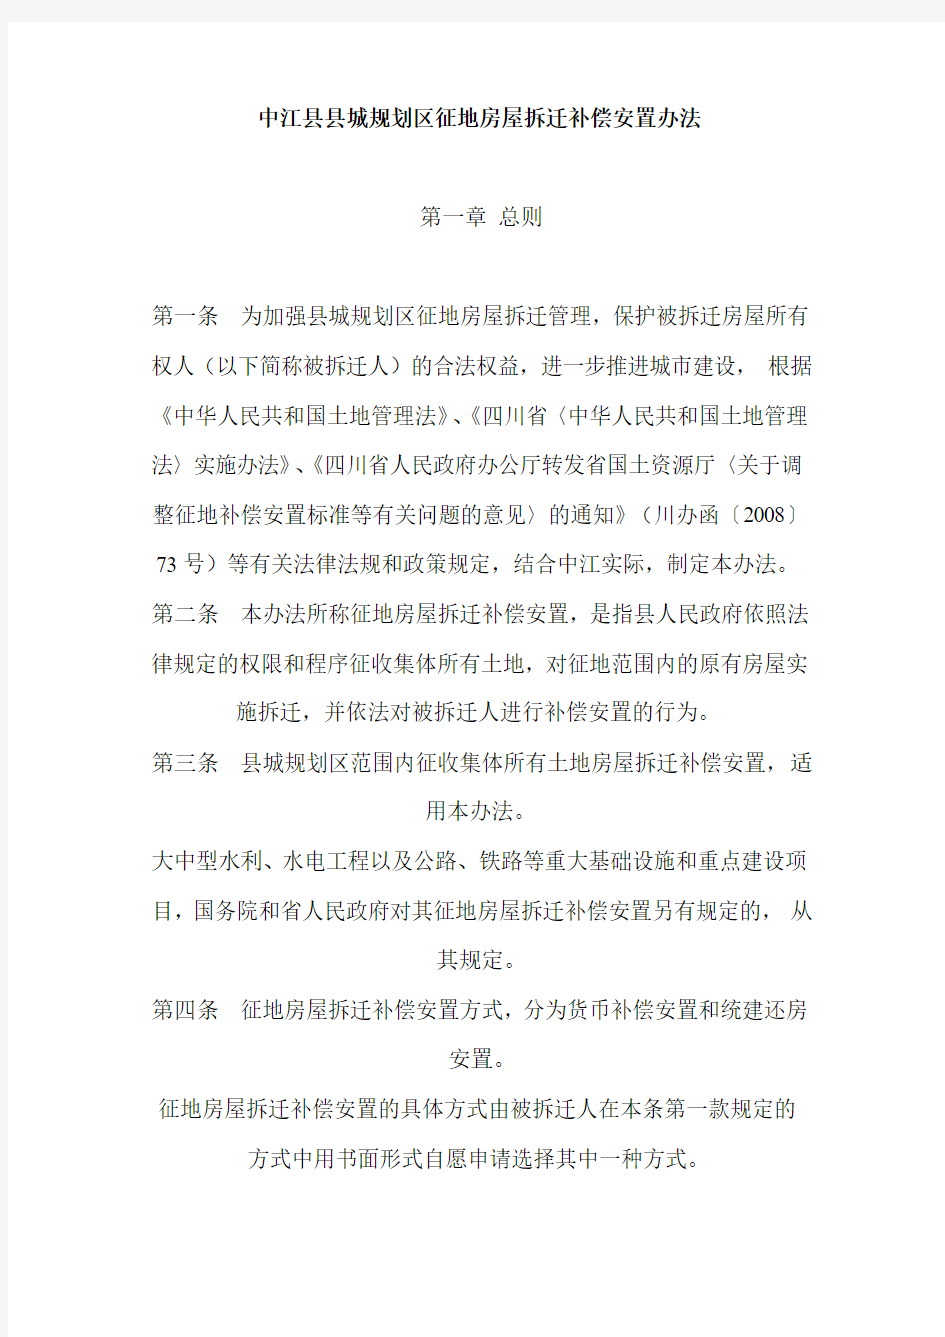 中江县县城规划区征地房屋拆迁补偿安置办法